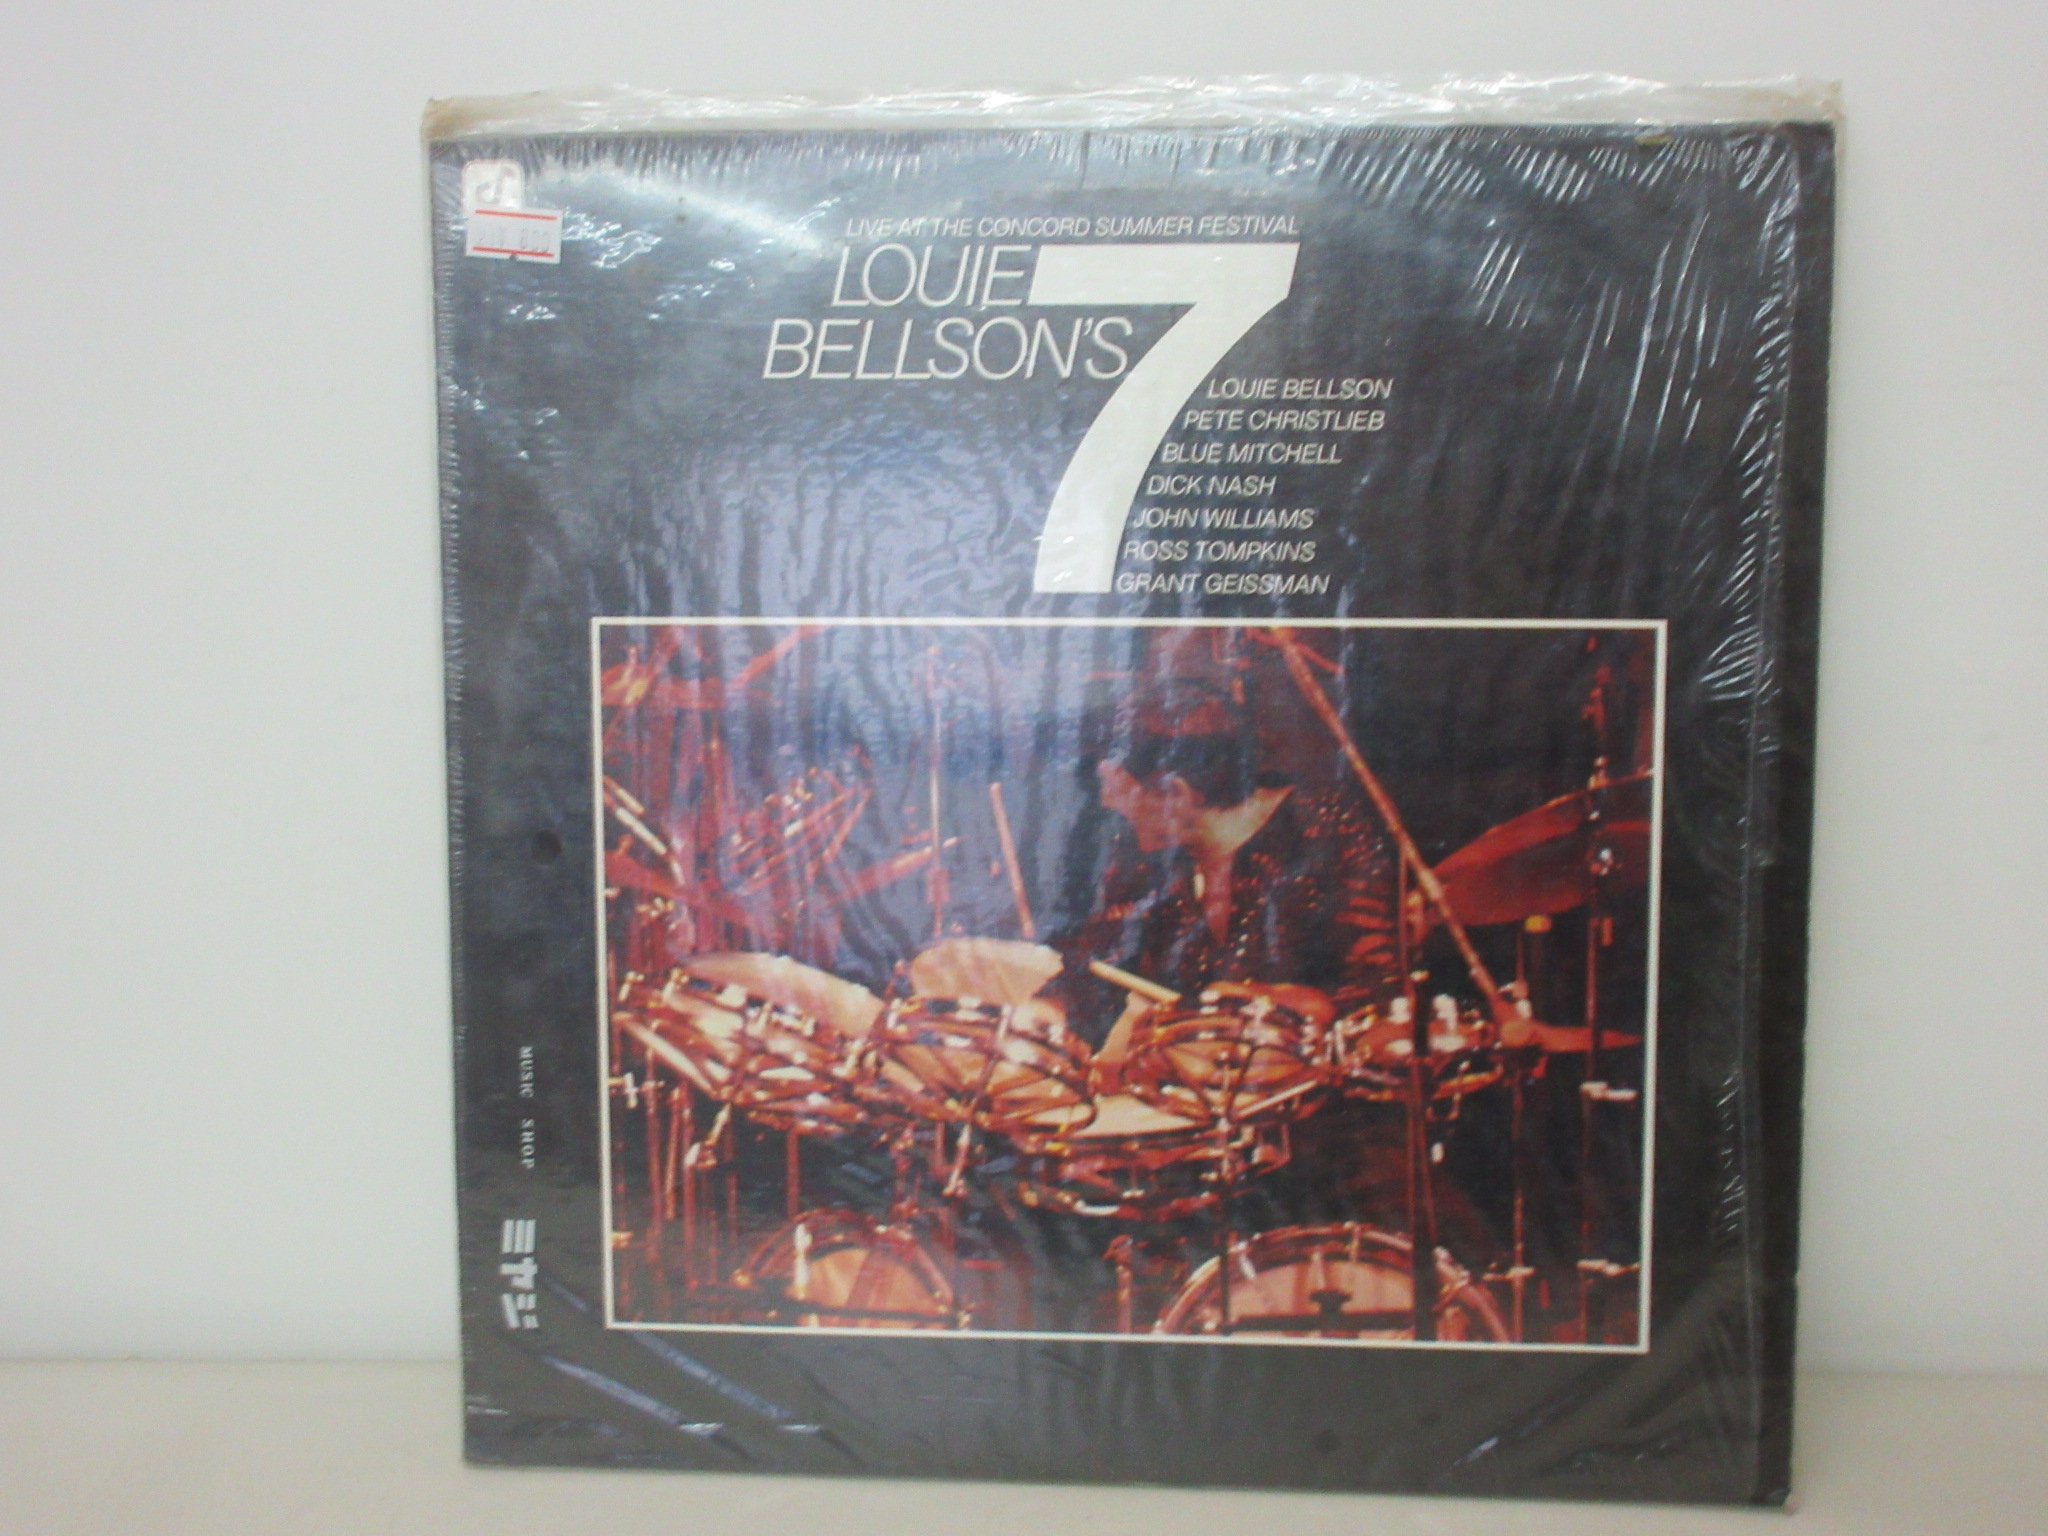 Louie Bellson - Louie Bellson's 7 - Live At The Concord Summer Festival [CJ-25]